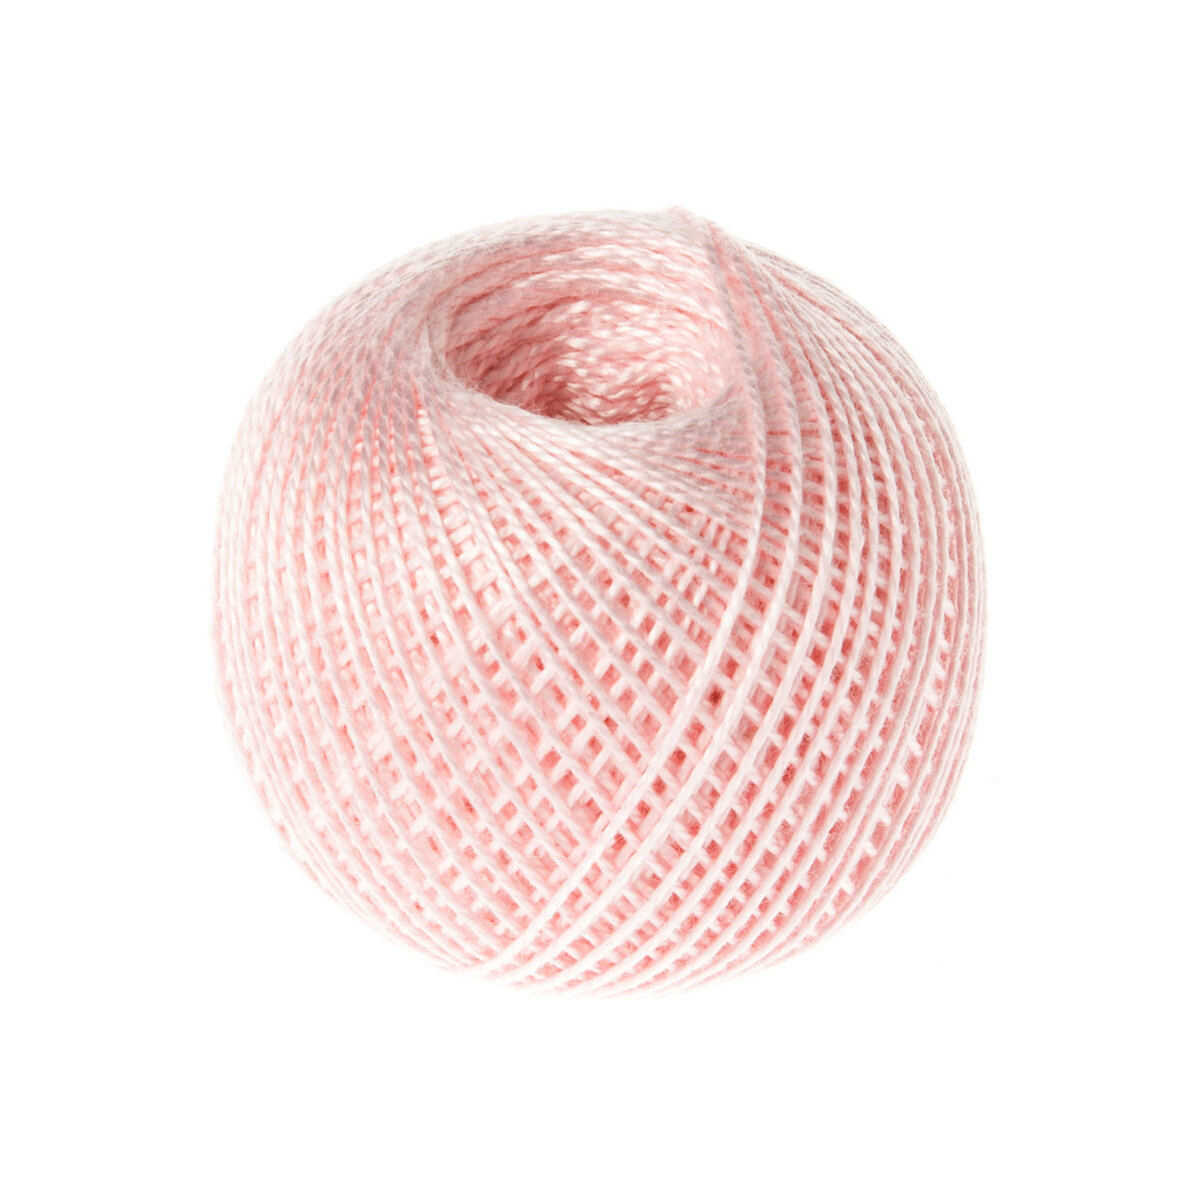 Нитки 'ирис' (100%хлопок) 25г, 150м (1002 бледно-розовый), 20 мотков